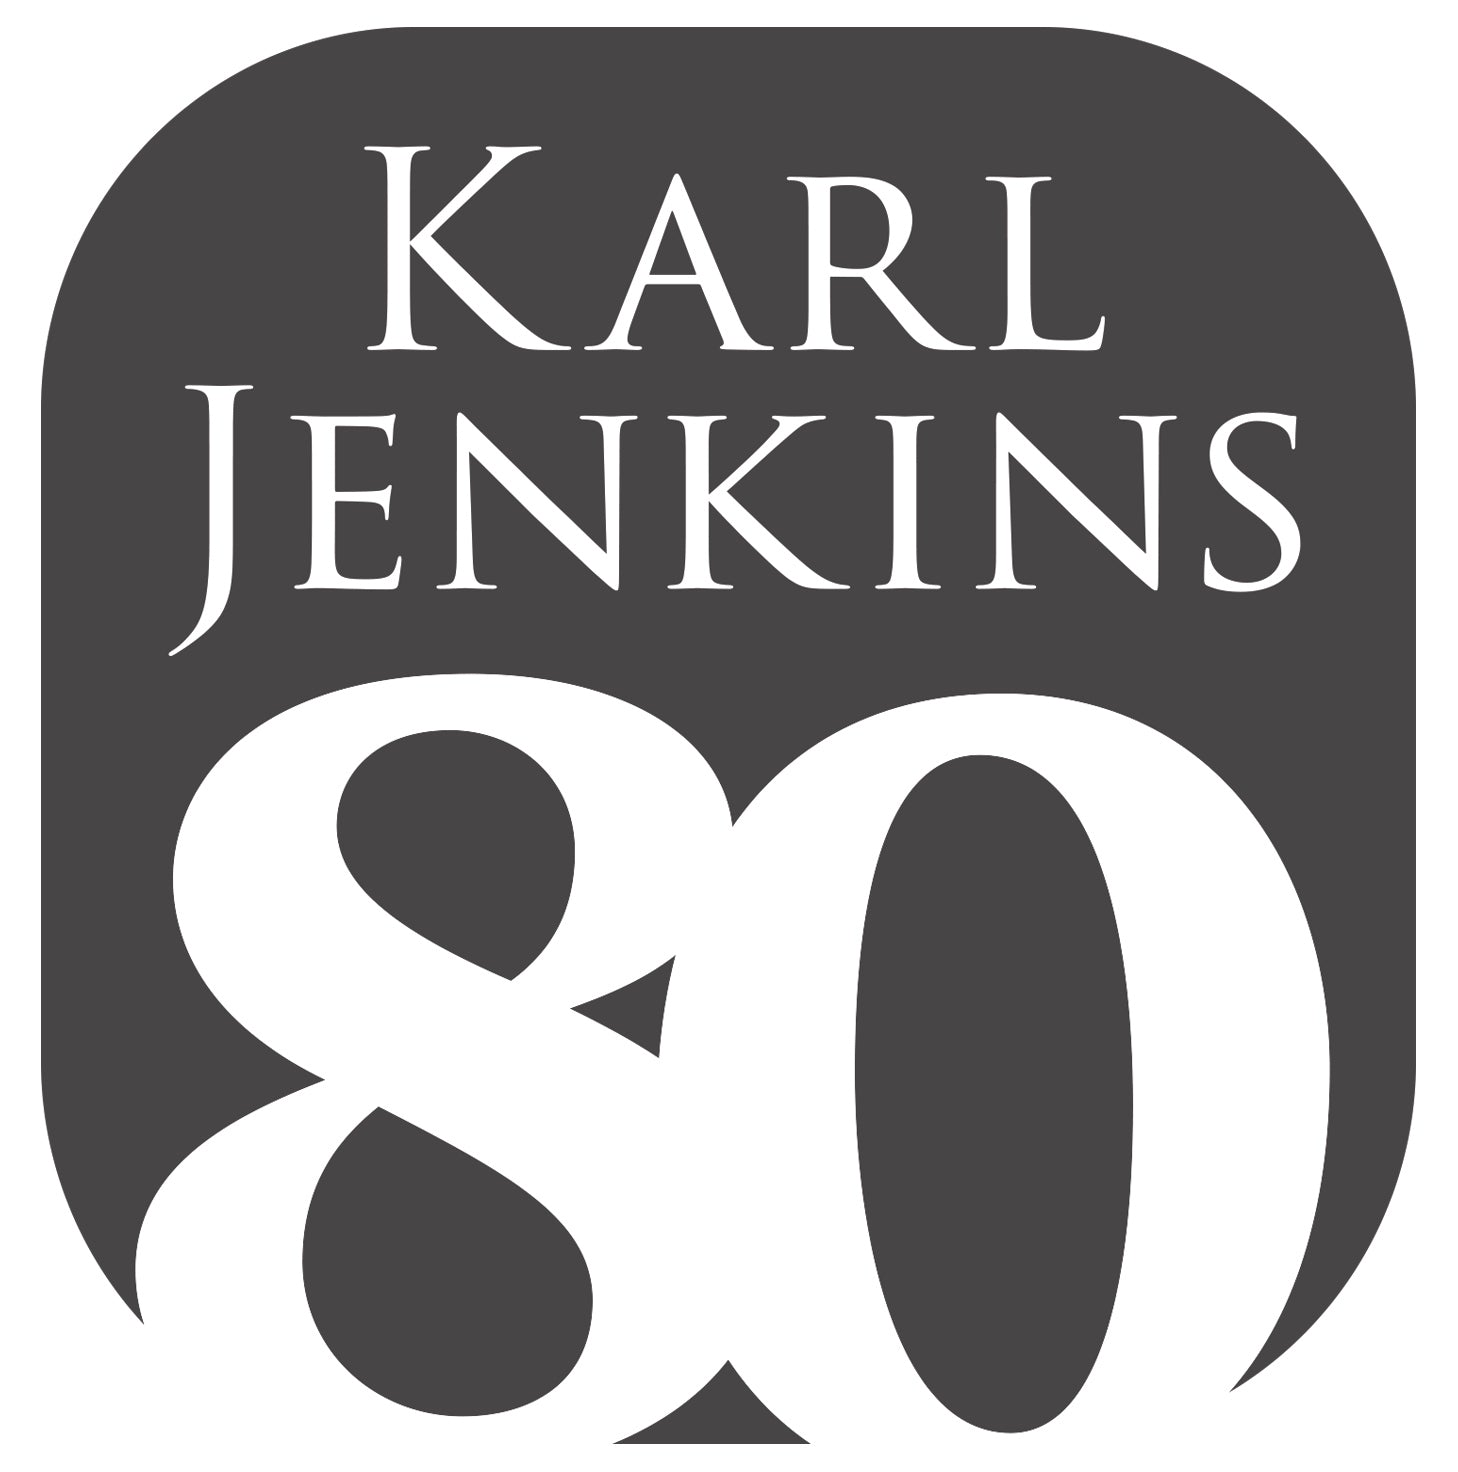 Karl Jenkins UK